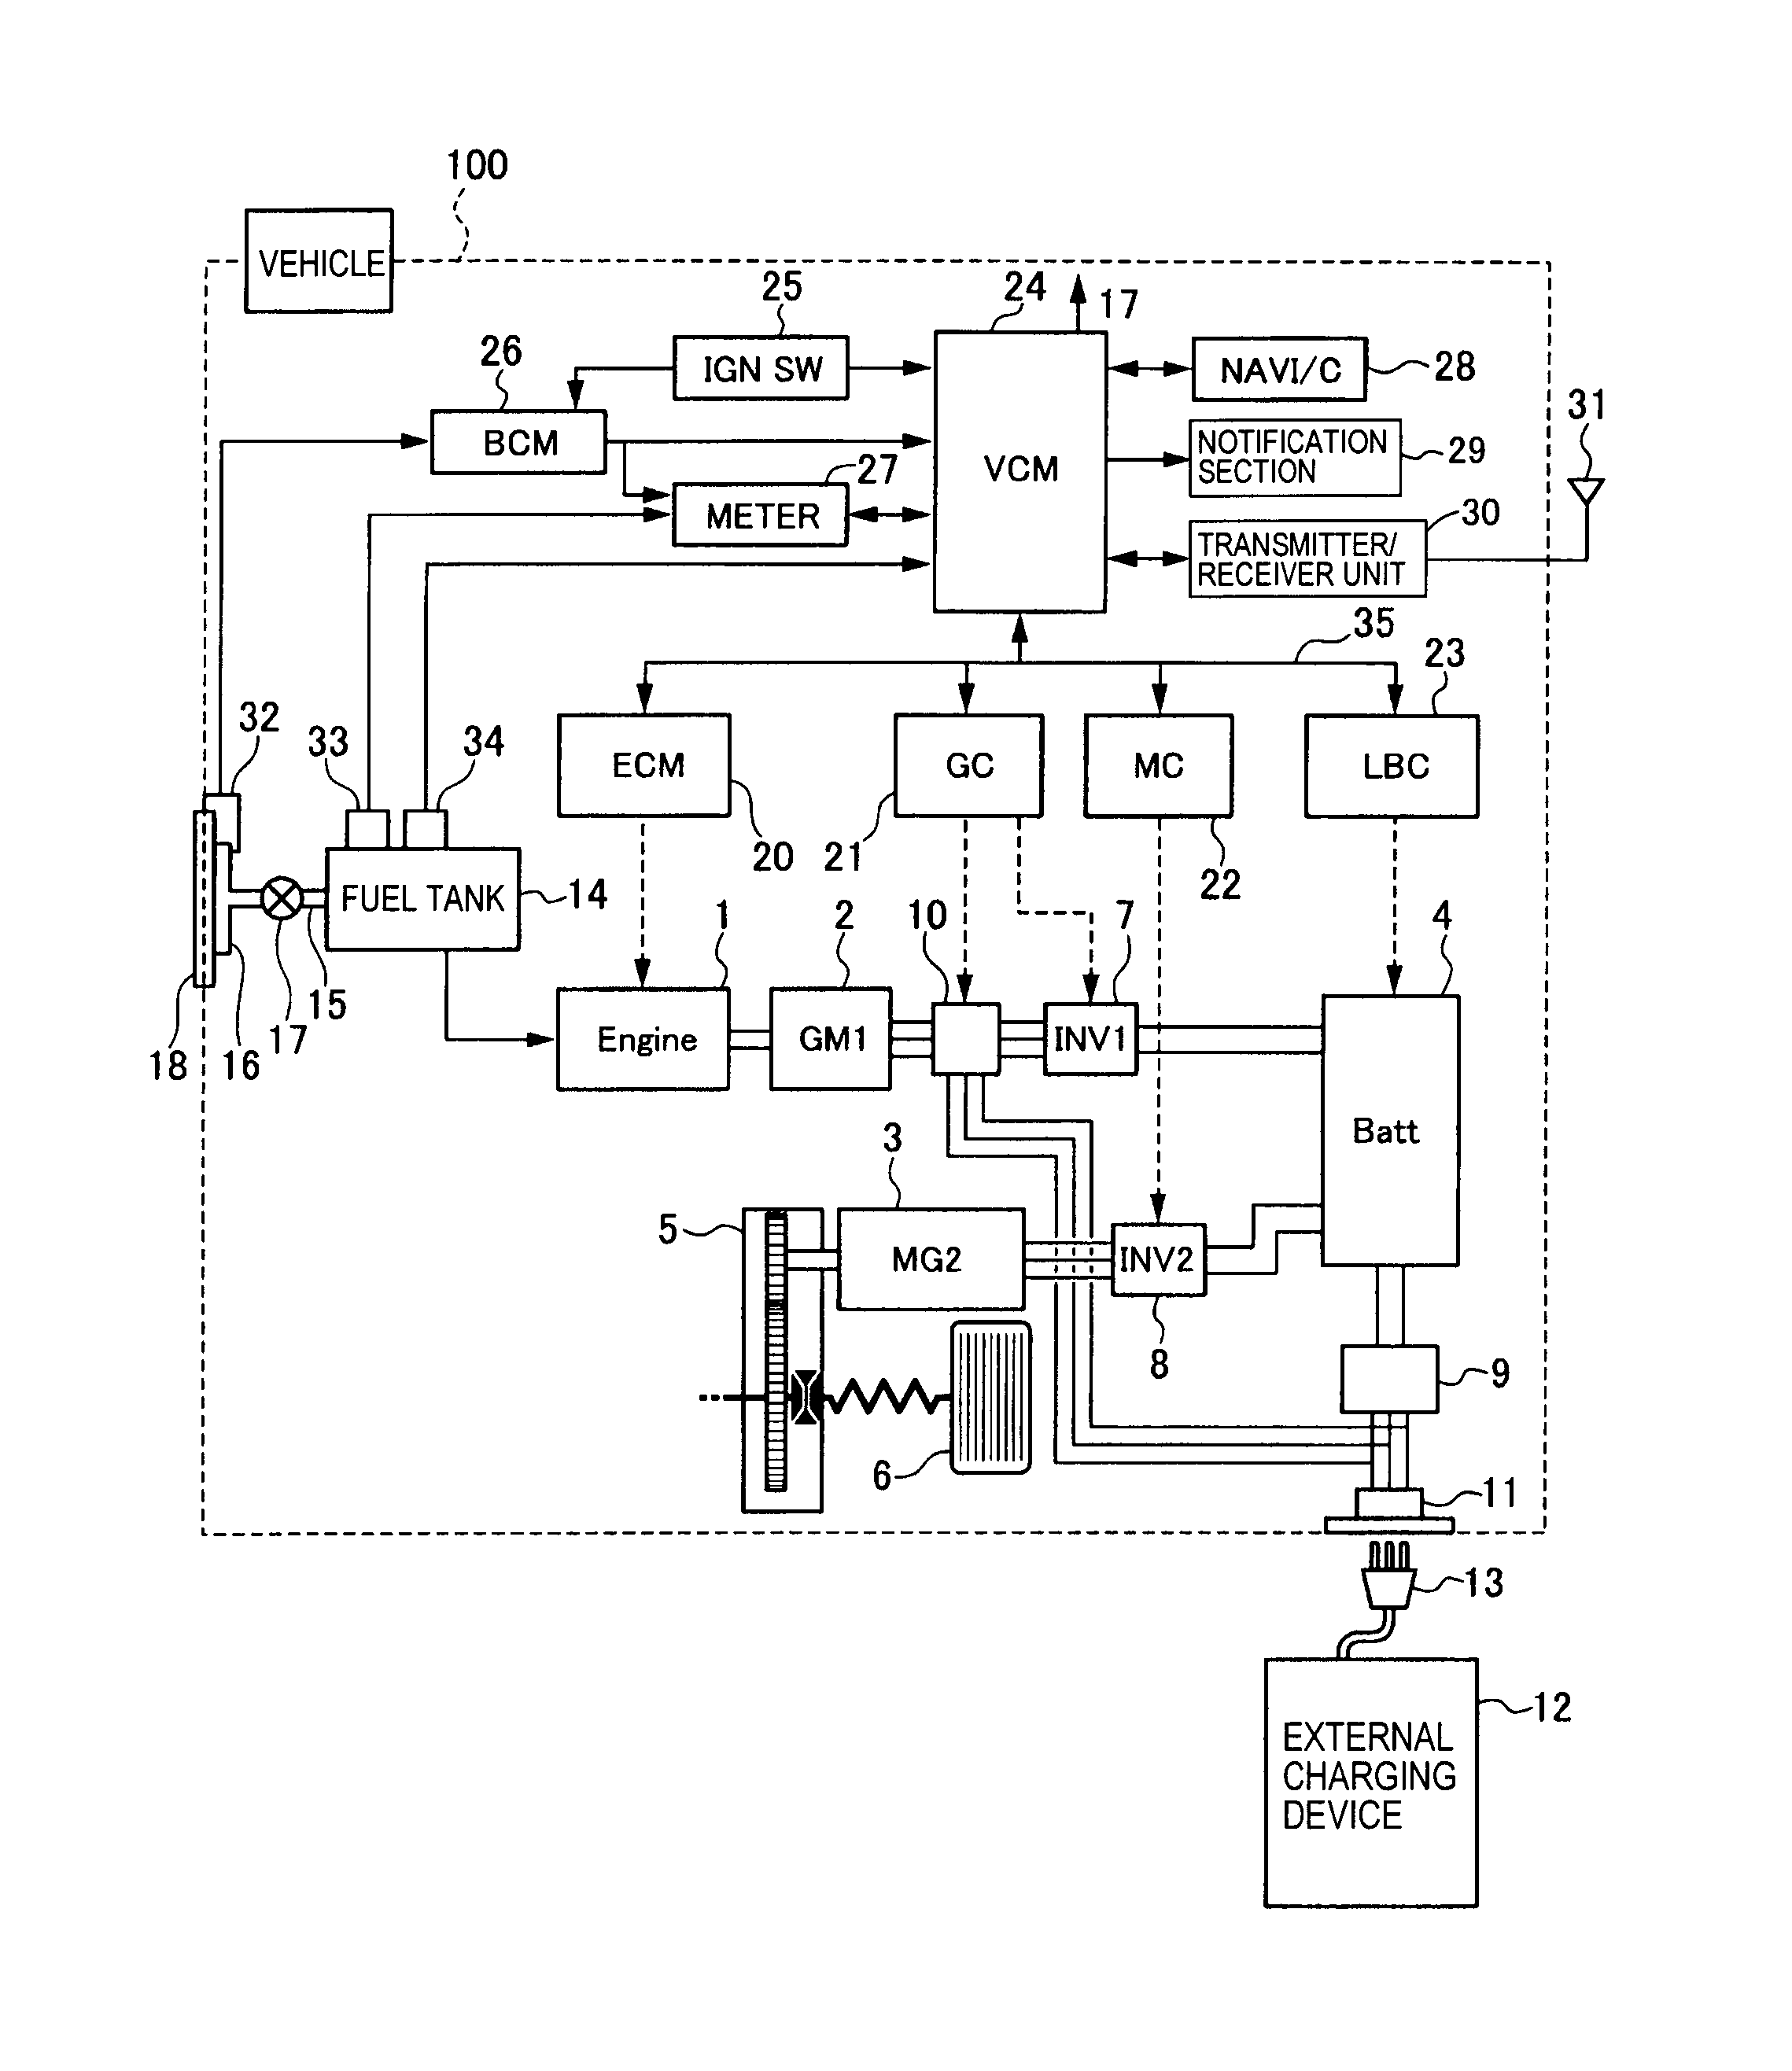 elkay solenoid valve s-45rv wiring diagram